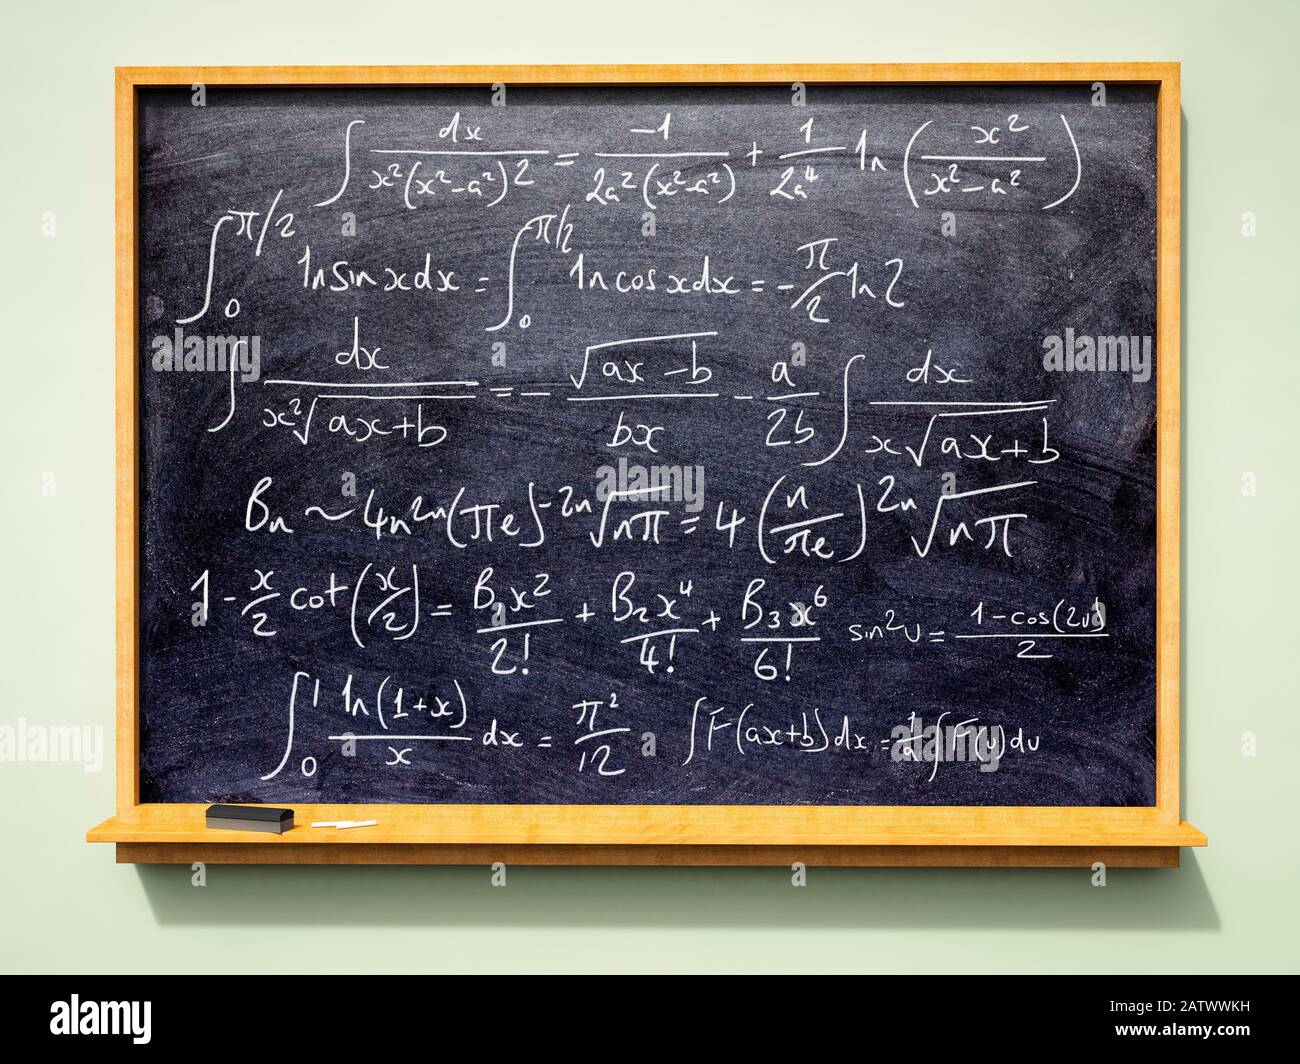 Tableau noir de l'école ou de l'université avec des formules et équations mathématiques avancées (algèbre) écrites dessus Banque D'Images